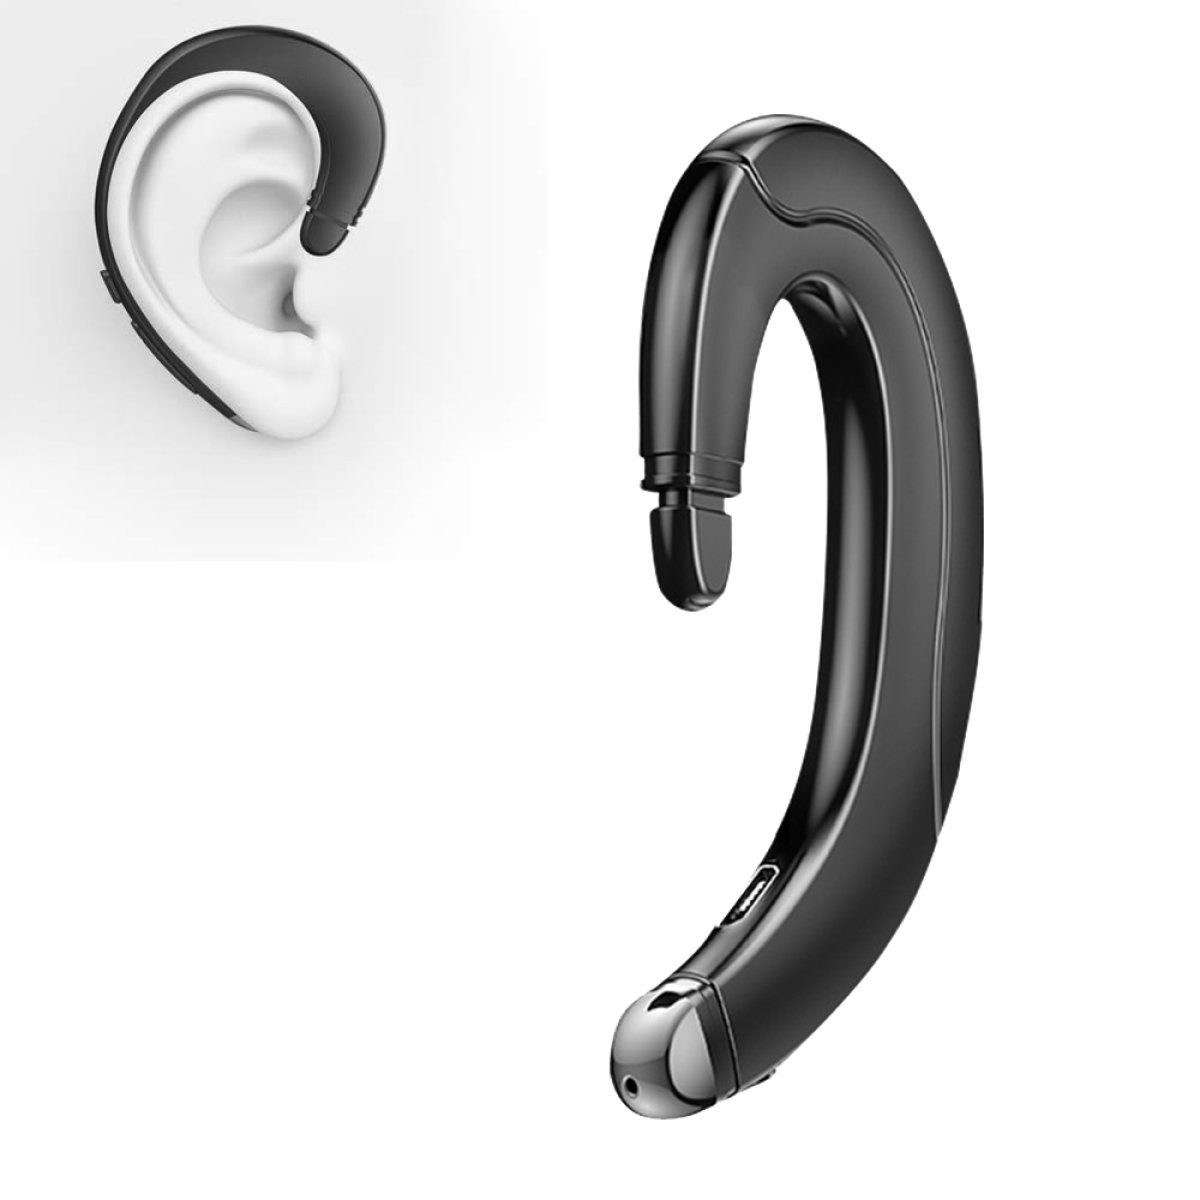 Drahtlos GelldG Kopfhörer, Knochenschall Kopfhörer Bluetooth-Kopfhörer